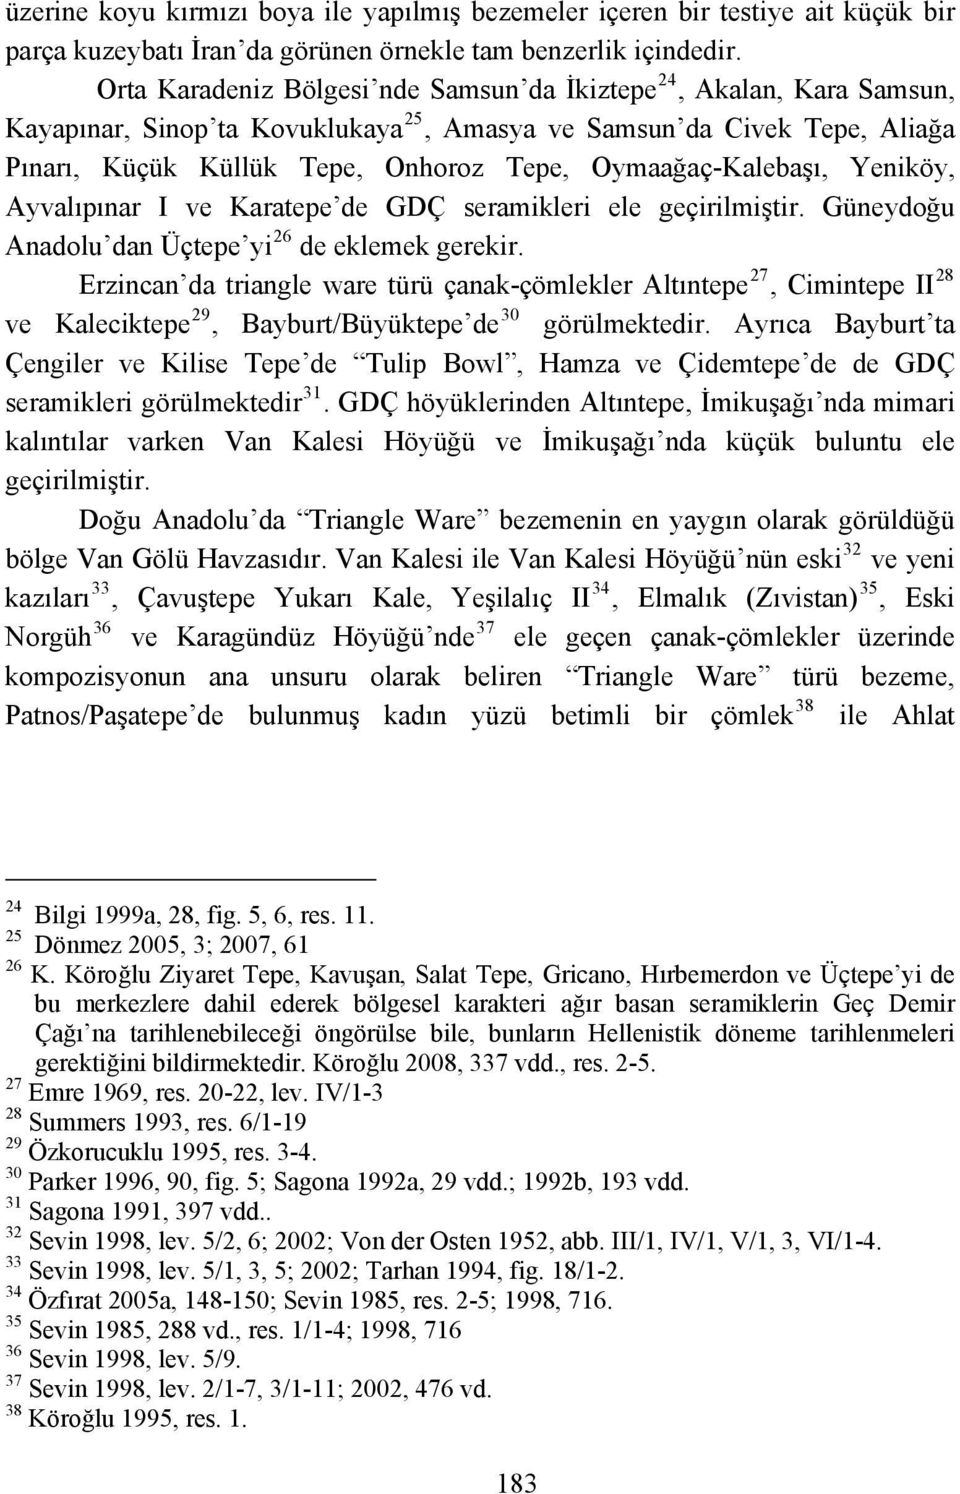 lebaşı, Yeniköy, Ayvalıpınar I ve Karatepe de GDÇ seramikleri ele geçirilmiştir. Güneydoğu Anadolu dan Üçtepe yi 26 de eklemek gerekir.